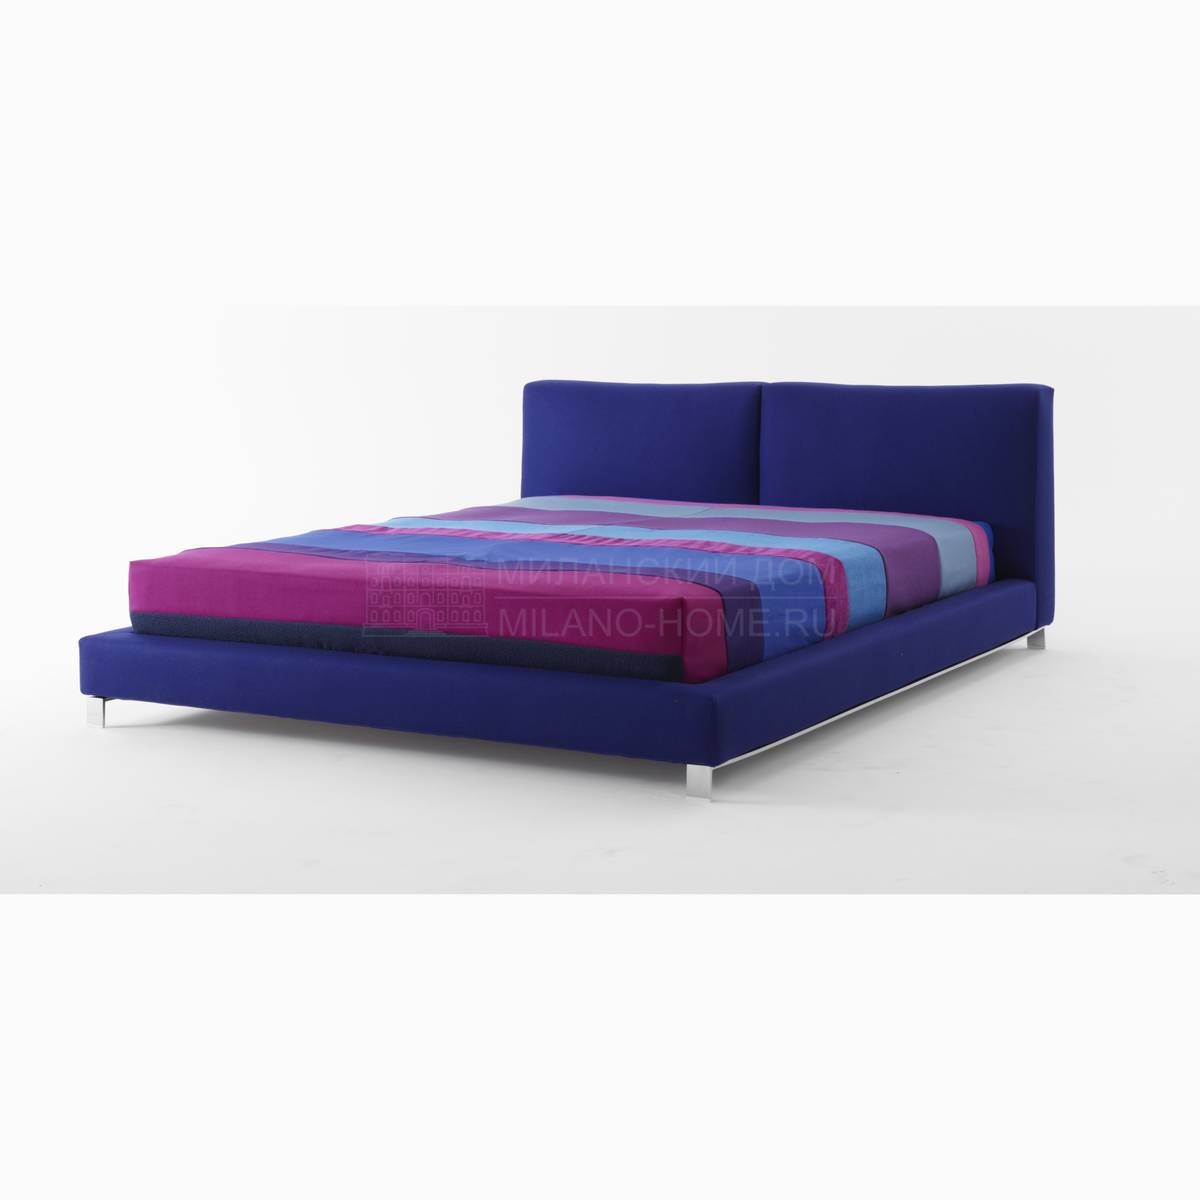 Кровать с мягким изголовьем Gemini/ bed из Италии фабрики NUBE